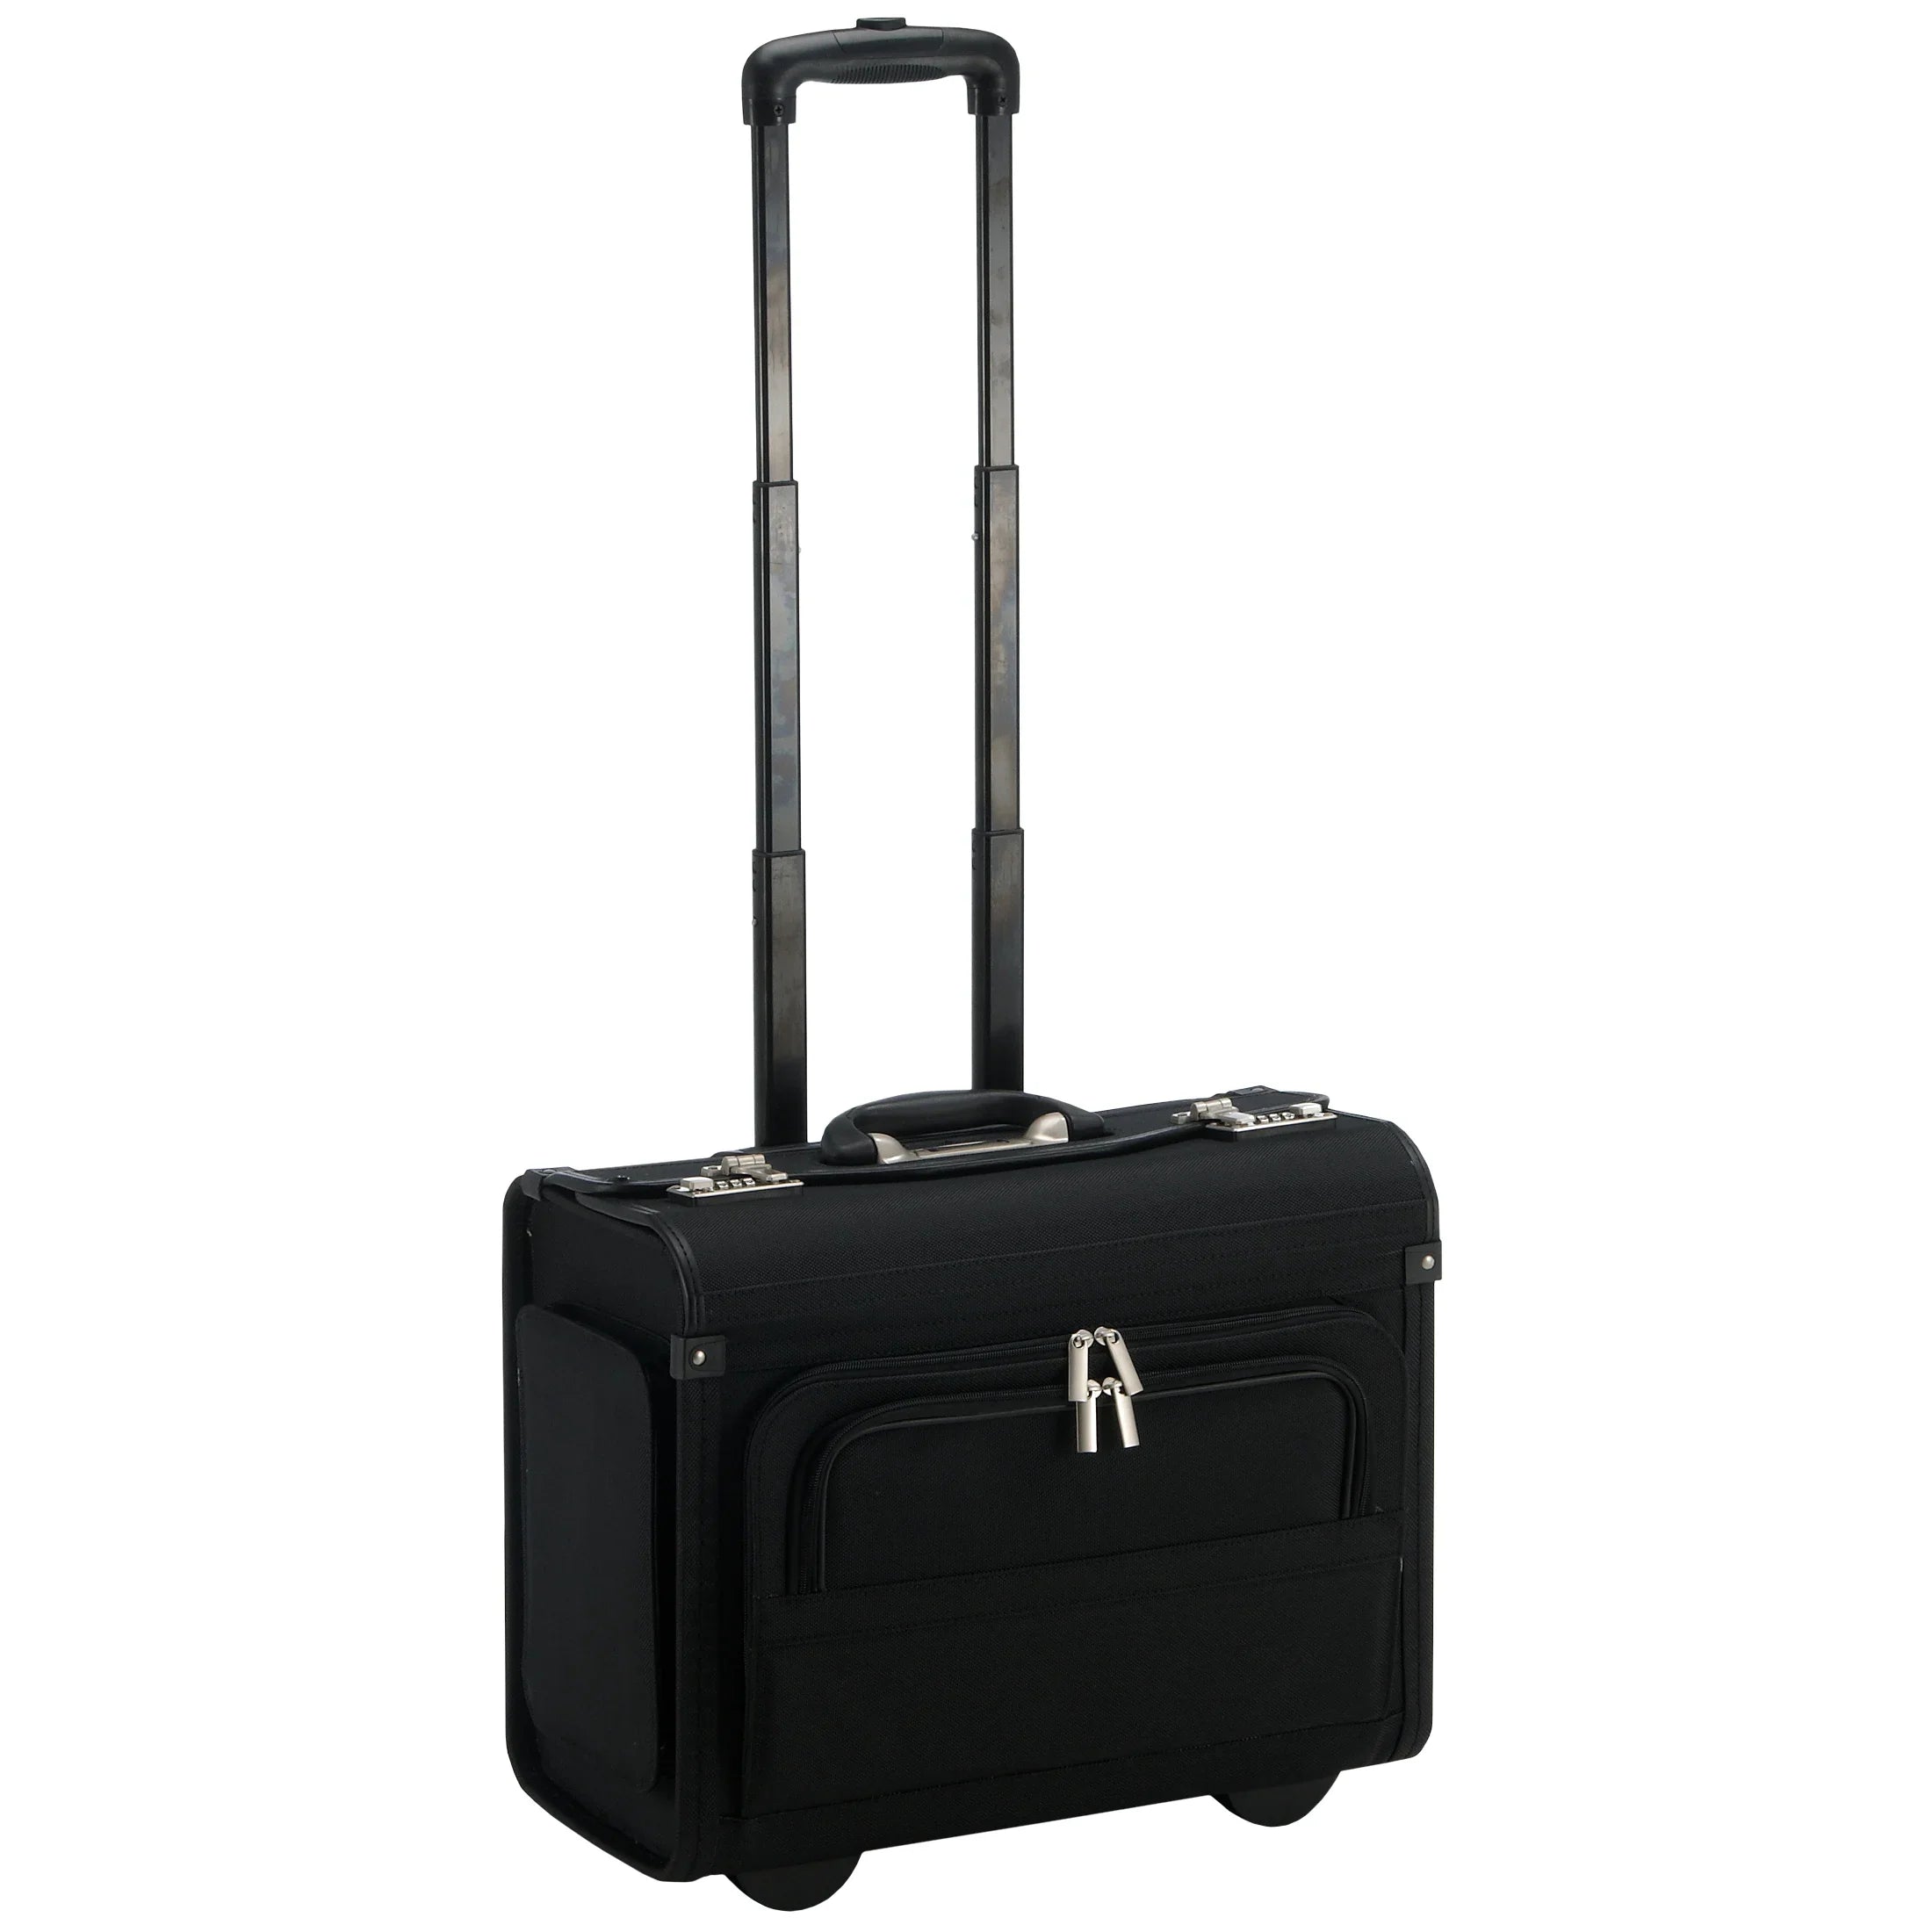 Dermata business pilot suitcase on wheels 46 cm - black